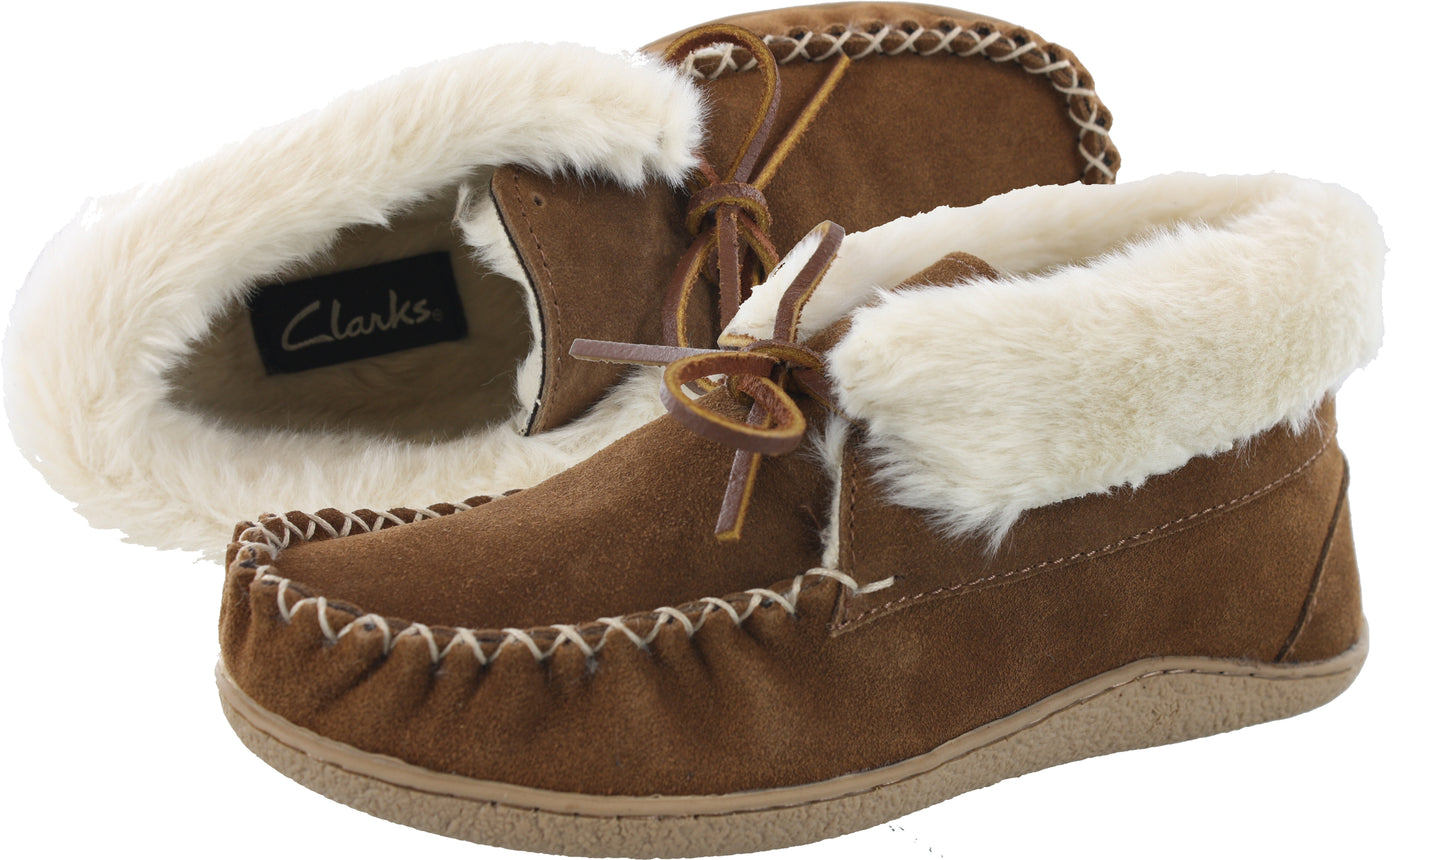 Clarks Moccasin Winter Slippers Nancy Women's | Shoe City